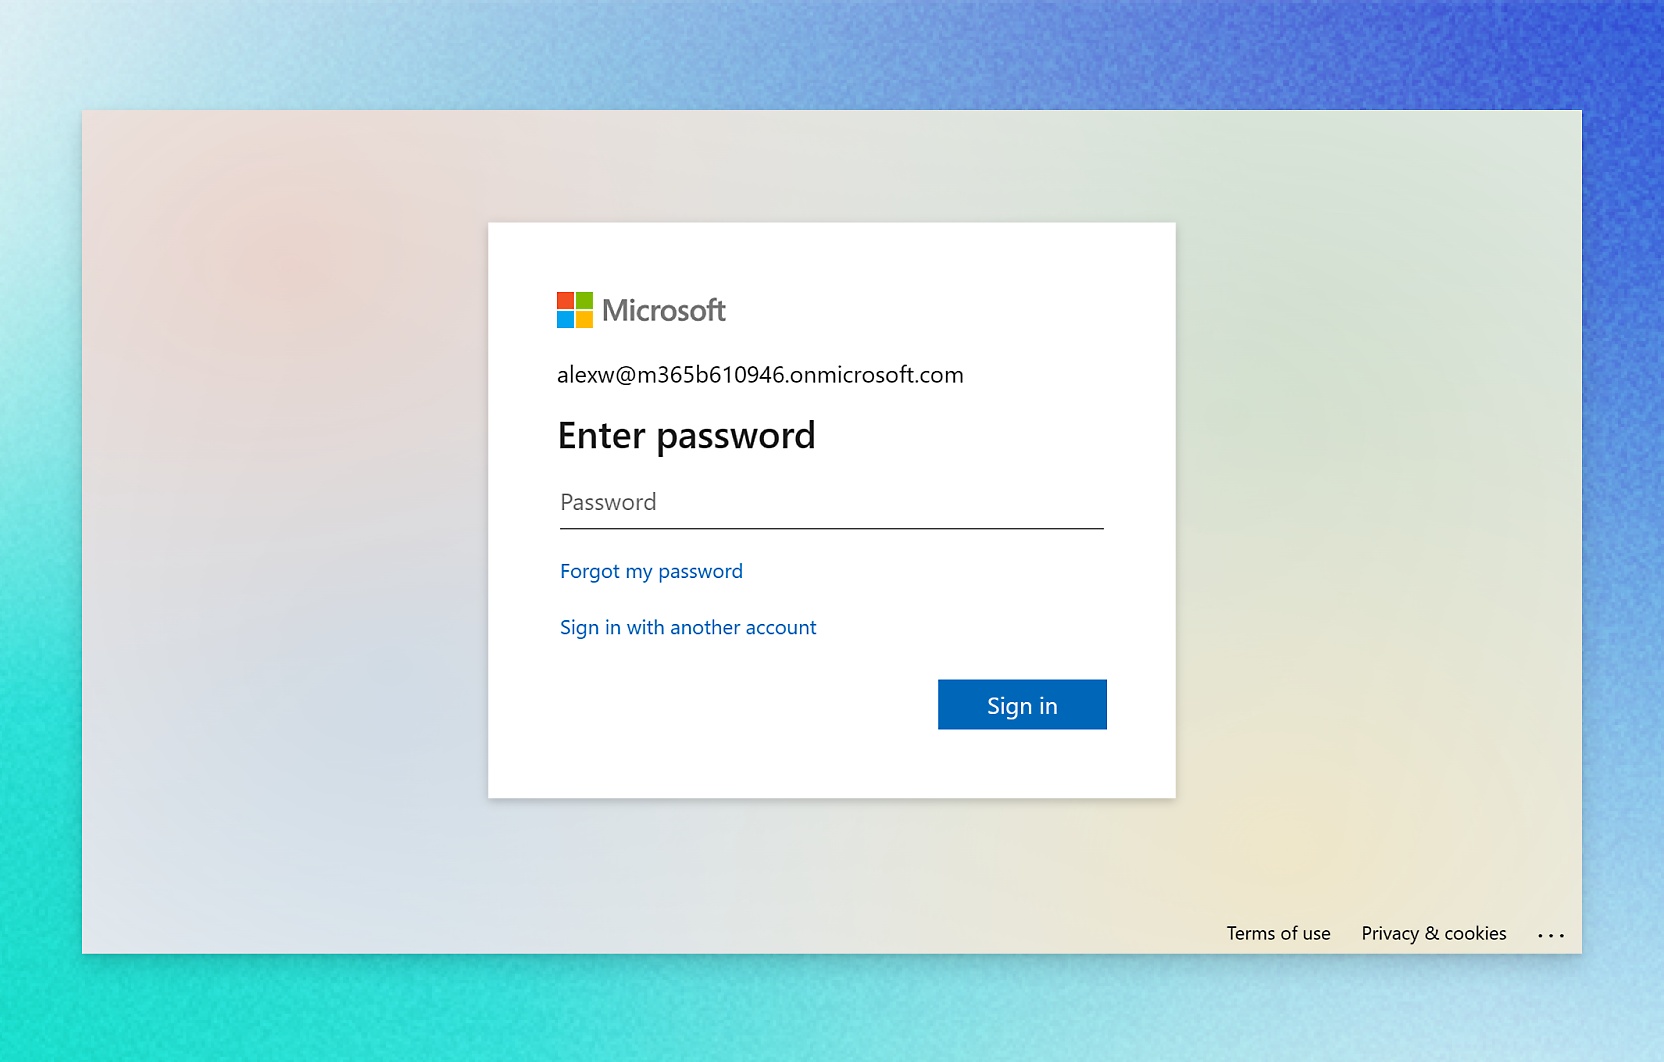 Recorte de pantalla de la pantalla de inicio de sesión de la cuenta Microsoft.